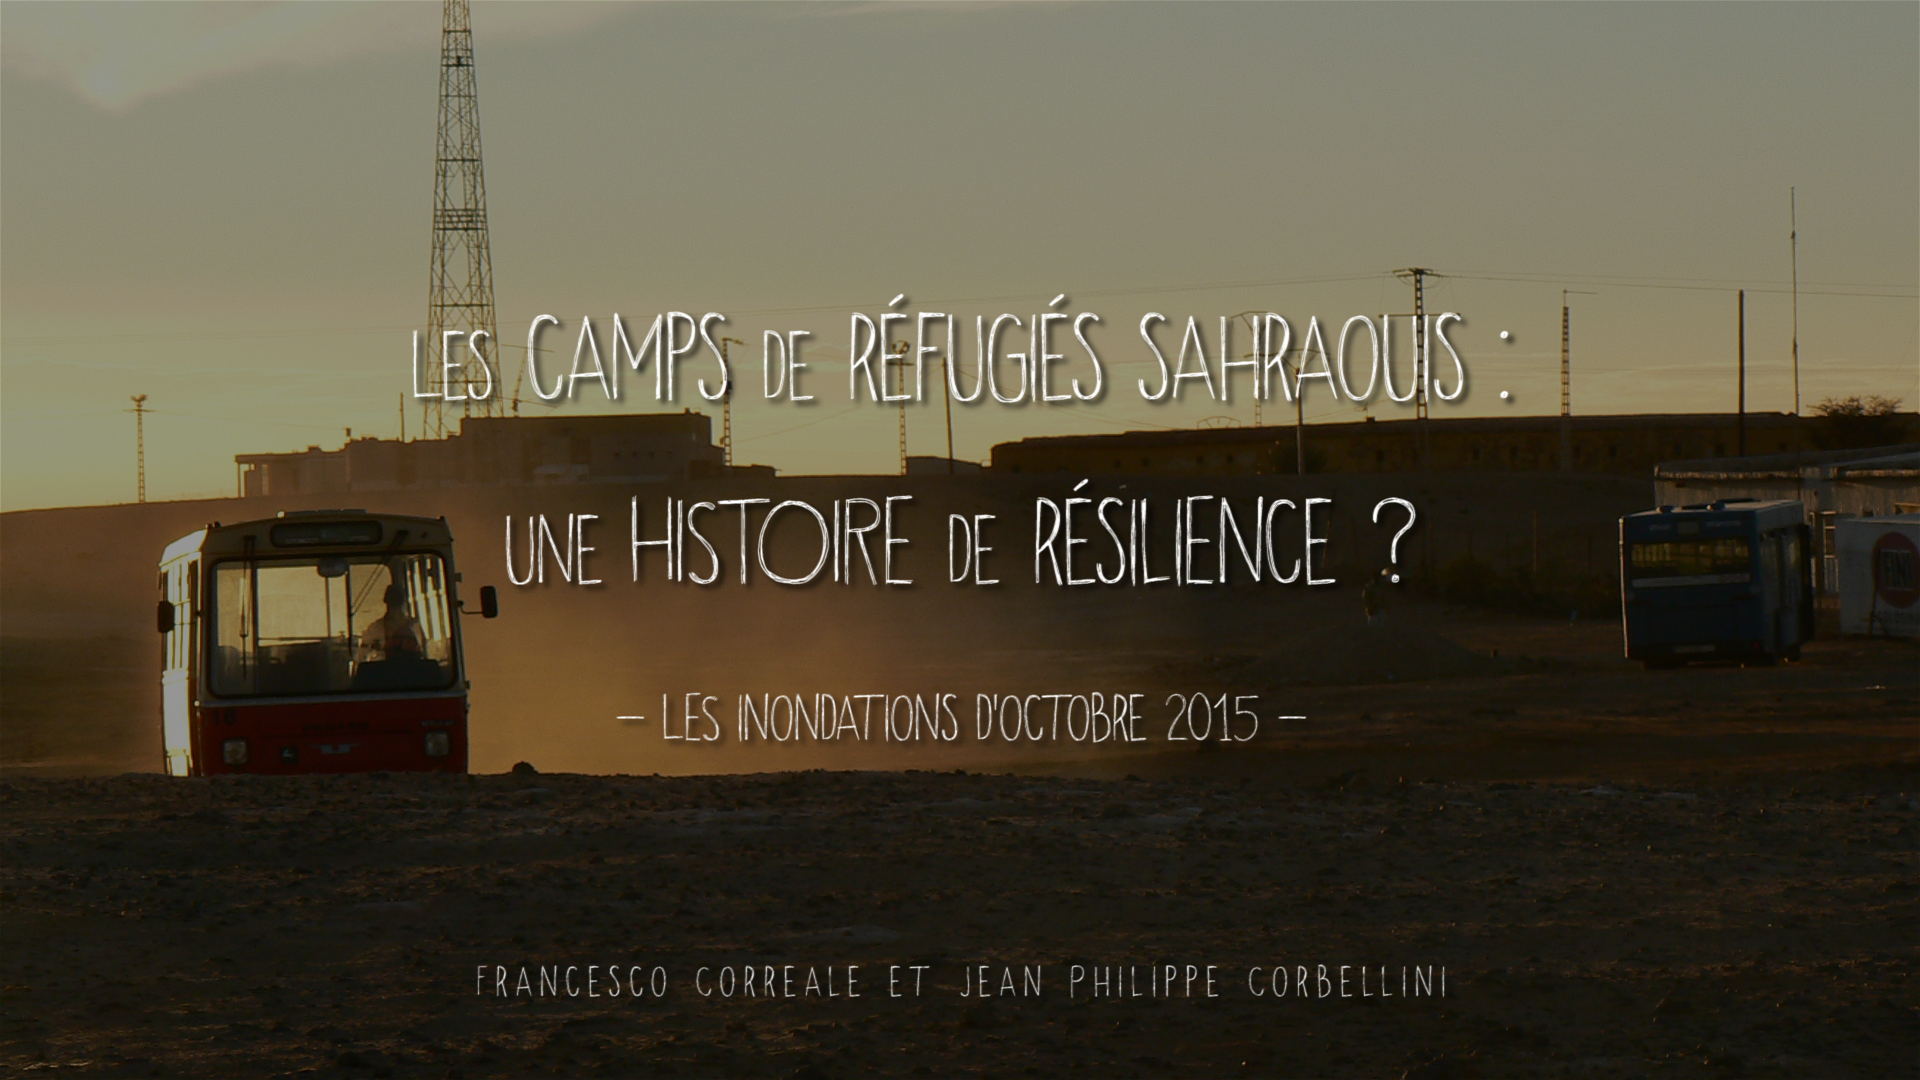 Les camps de réfugiés sahraouis : une histoire de résilience ? - Les inondations d'octobre 2015 -